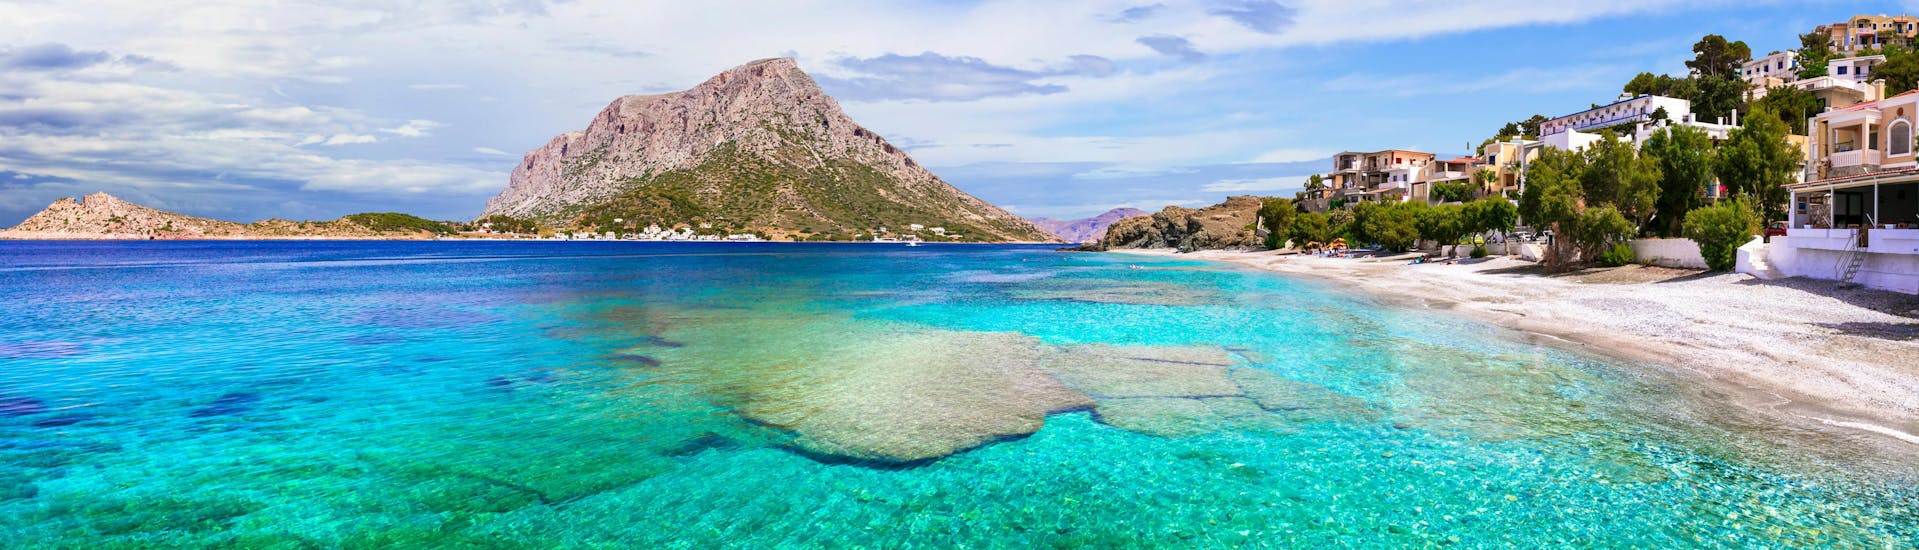 Uitzicht over Kalymnos, een prachtig eiland dat je kunt ontdekken met een boottocht.